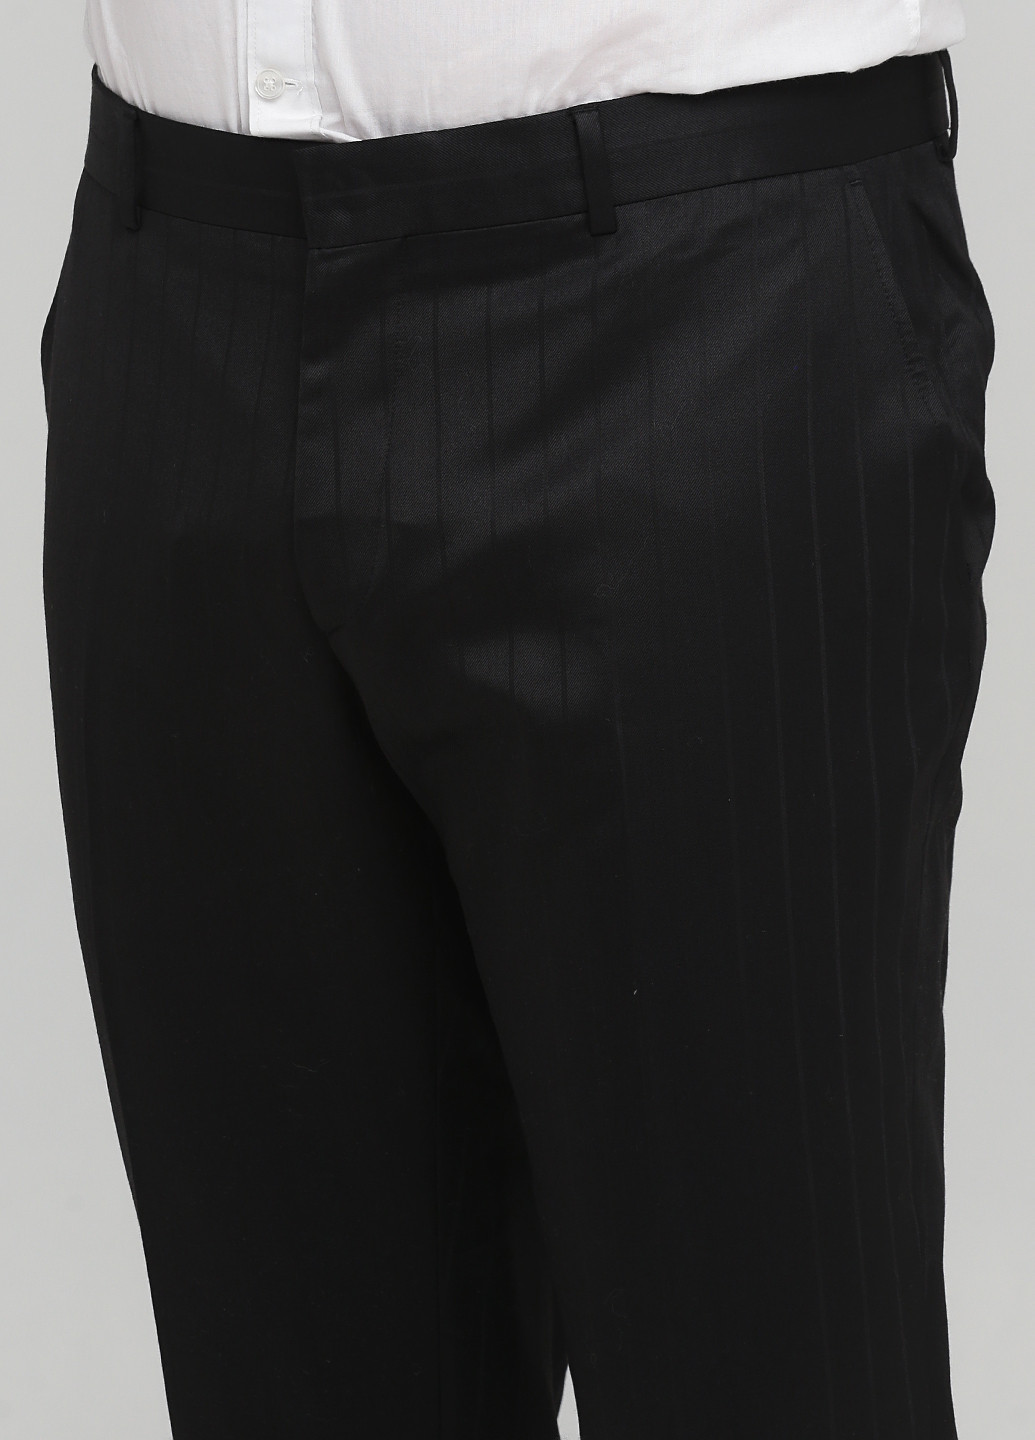 Чорний костюм Roberto Cavalli